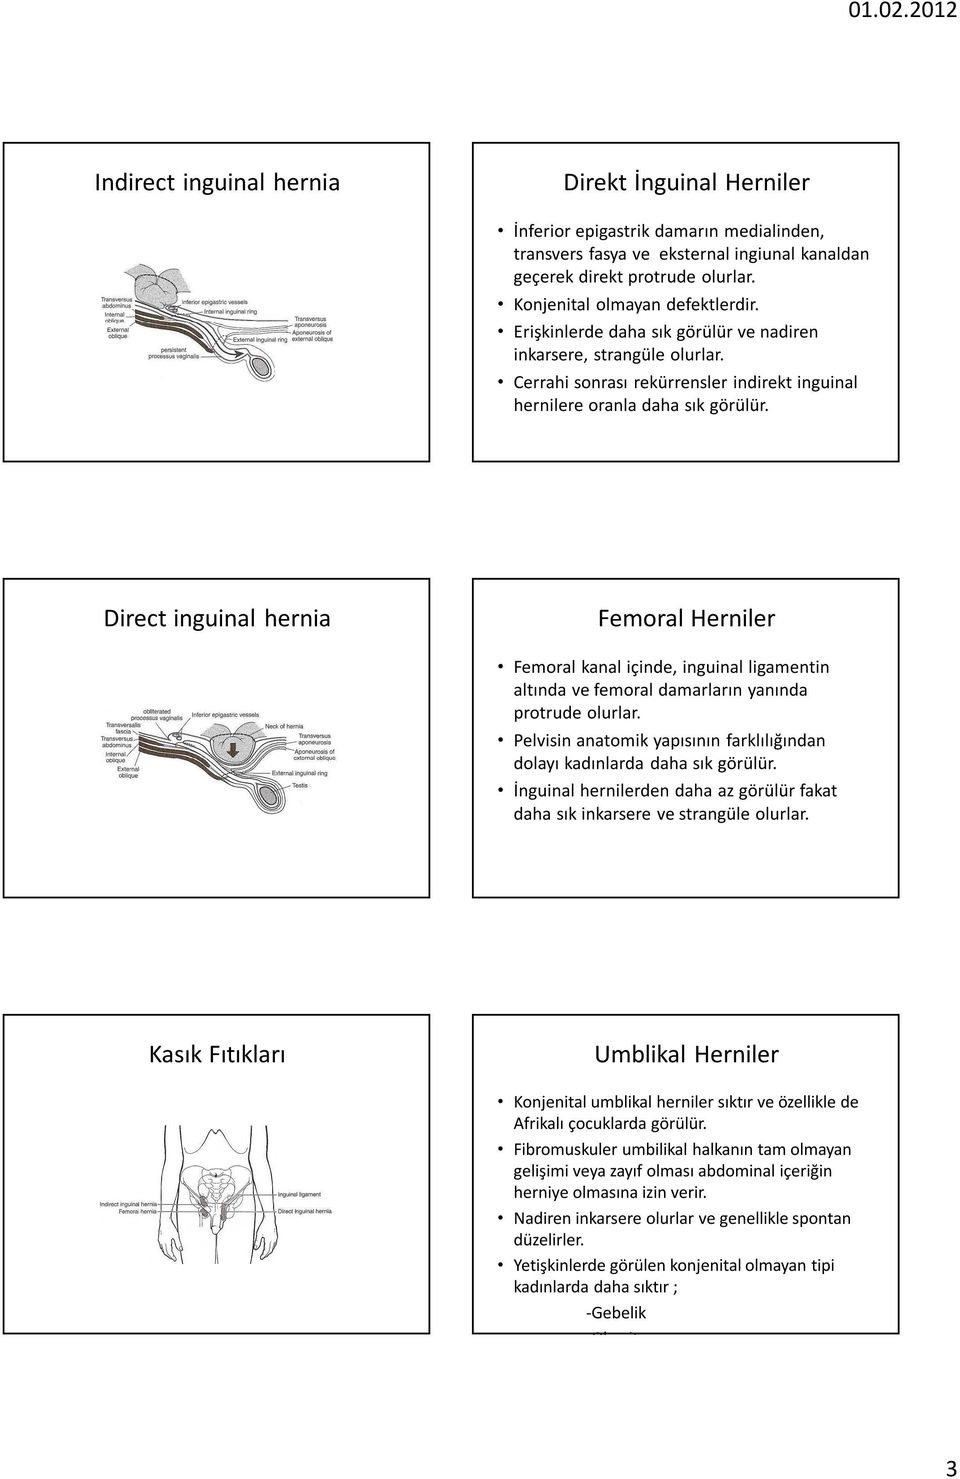 Direct inguinal hernia Femoral Herniler Femoral kanal içinde, inguinal ligamentin altında ve femoral damarların yanında protrude olurlar.